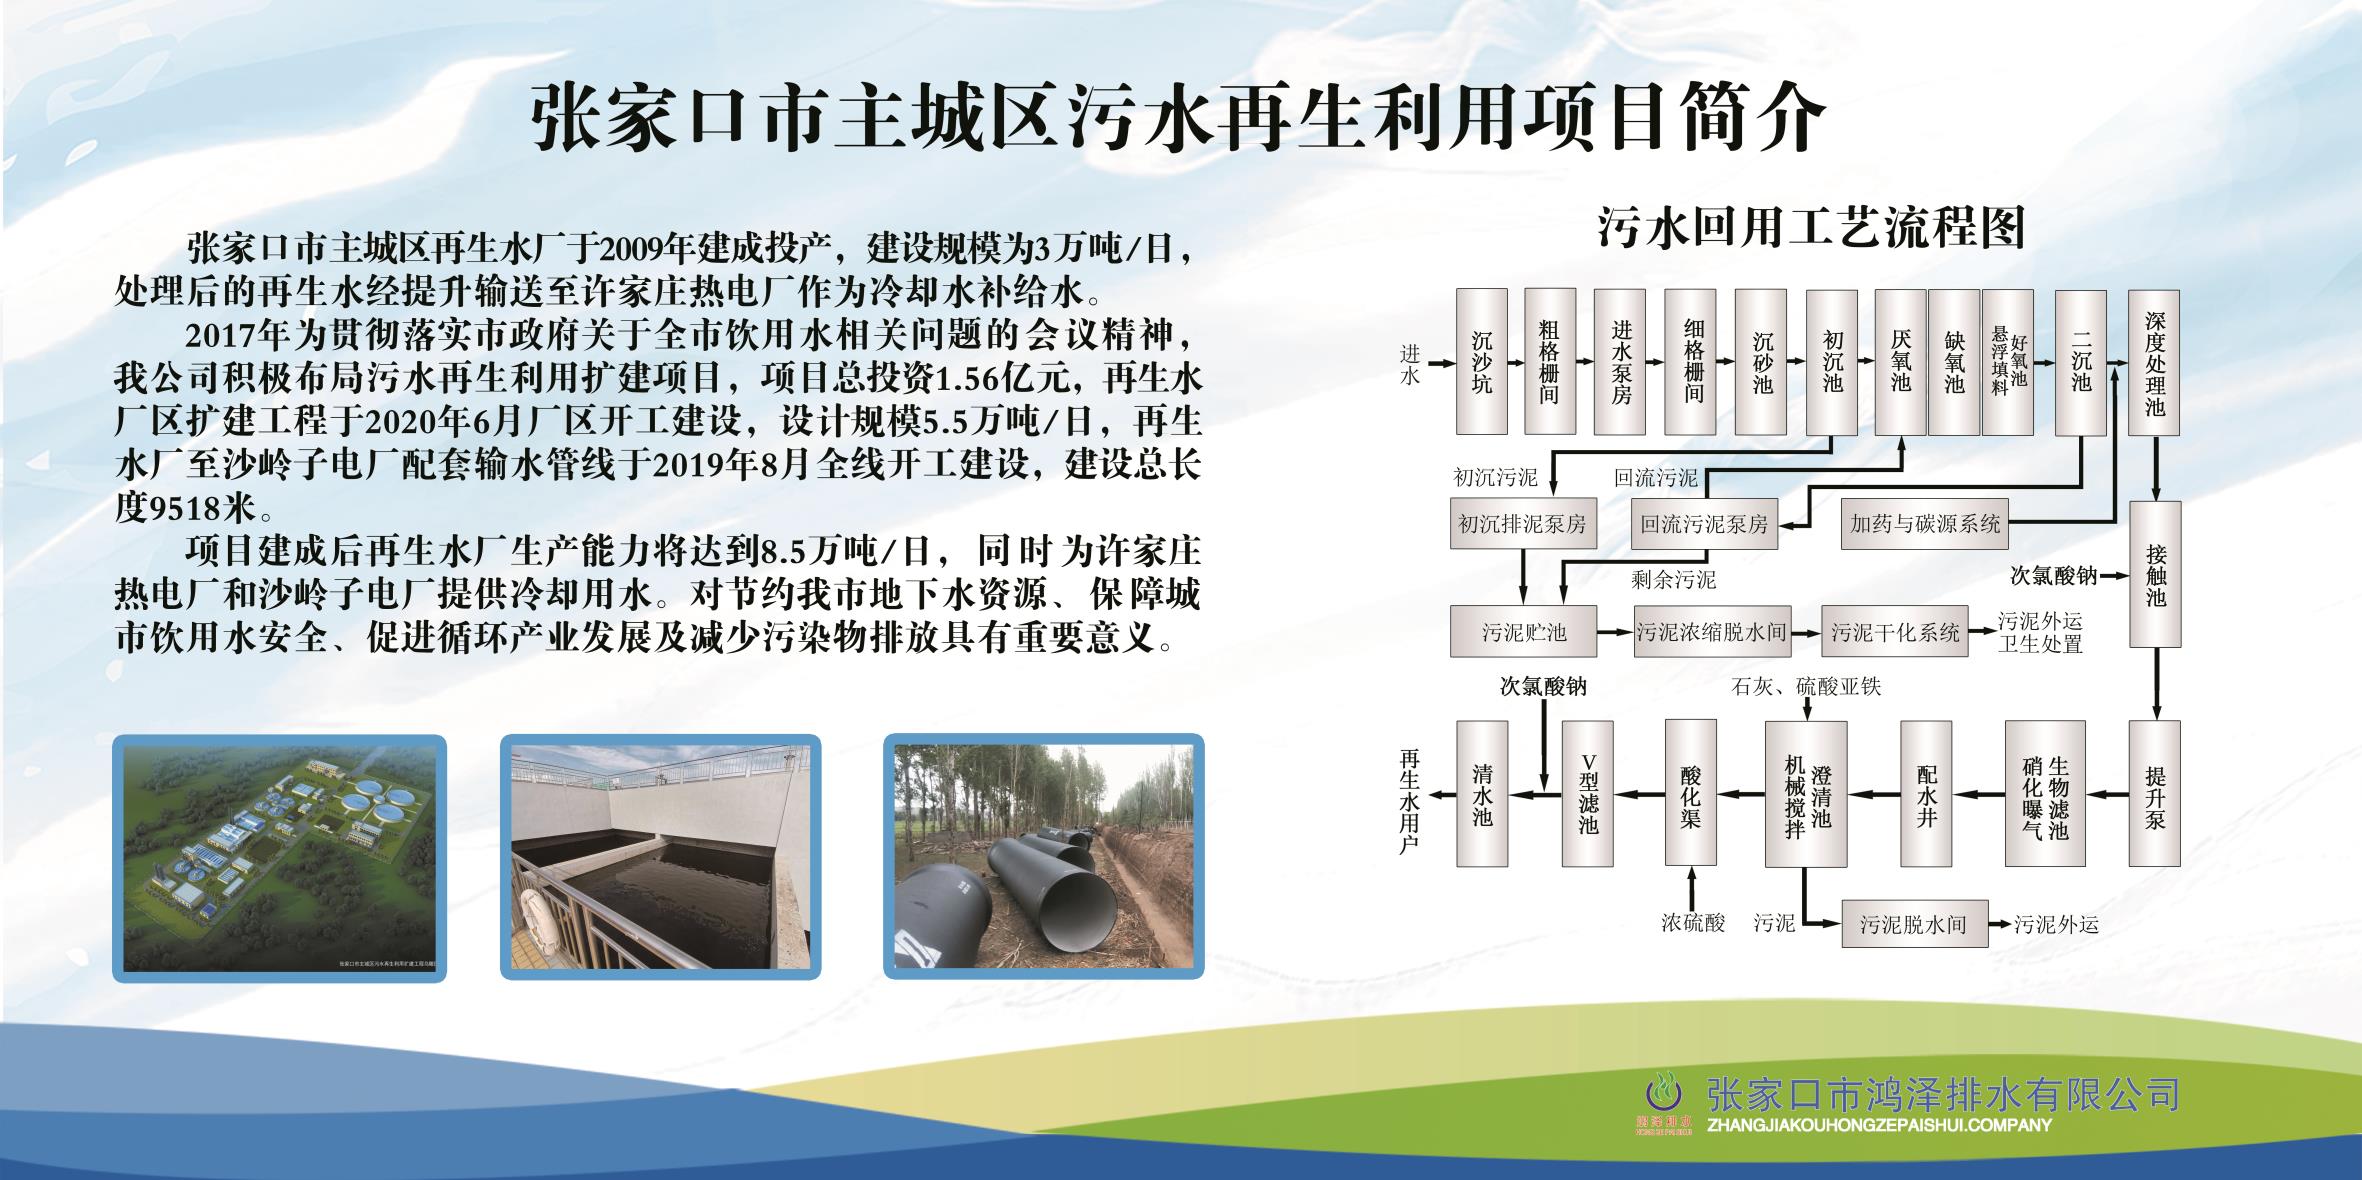 中國礦大定制的無人駕駛鋰電蓄電池電機車發貨